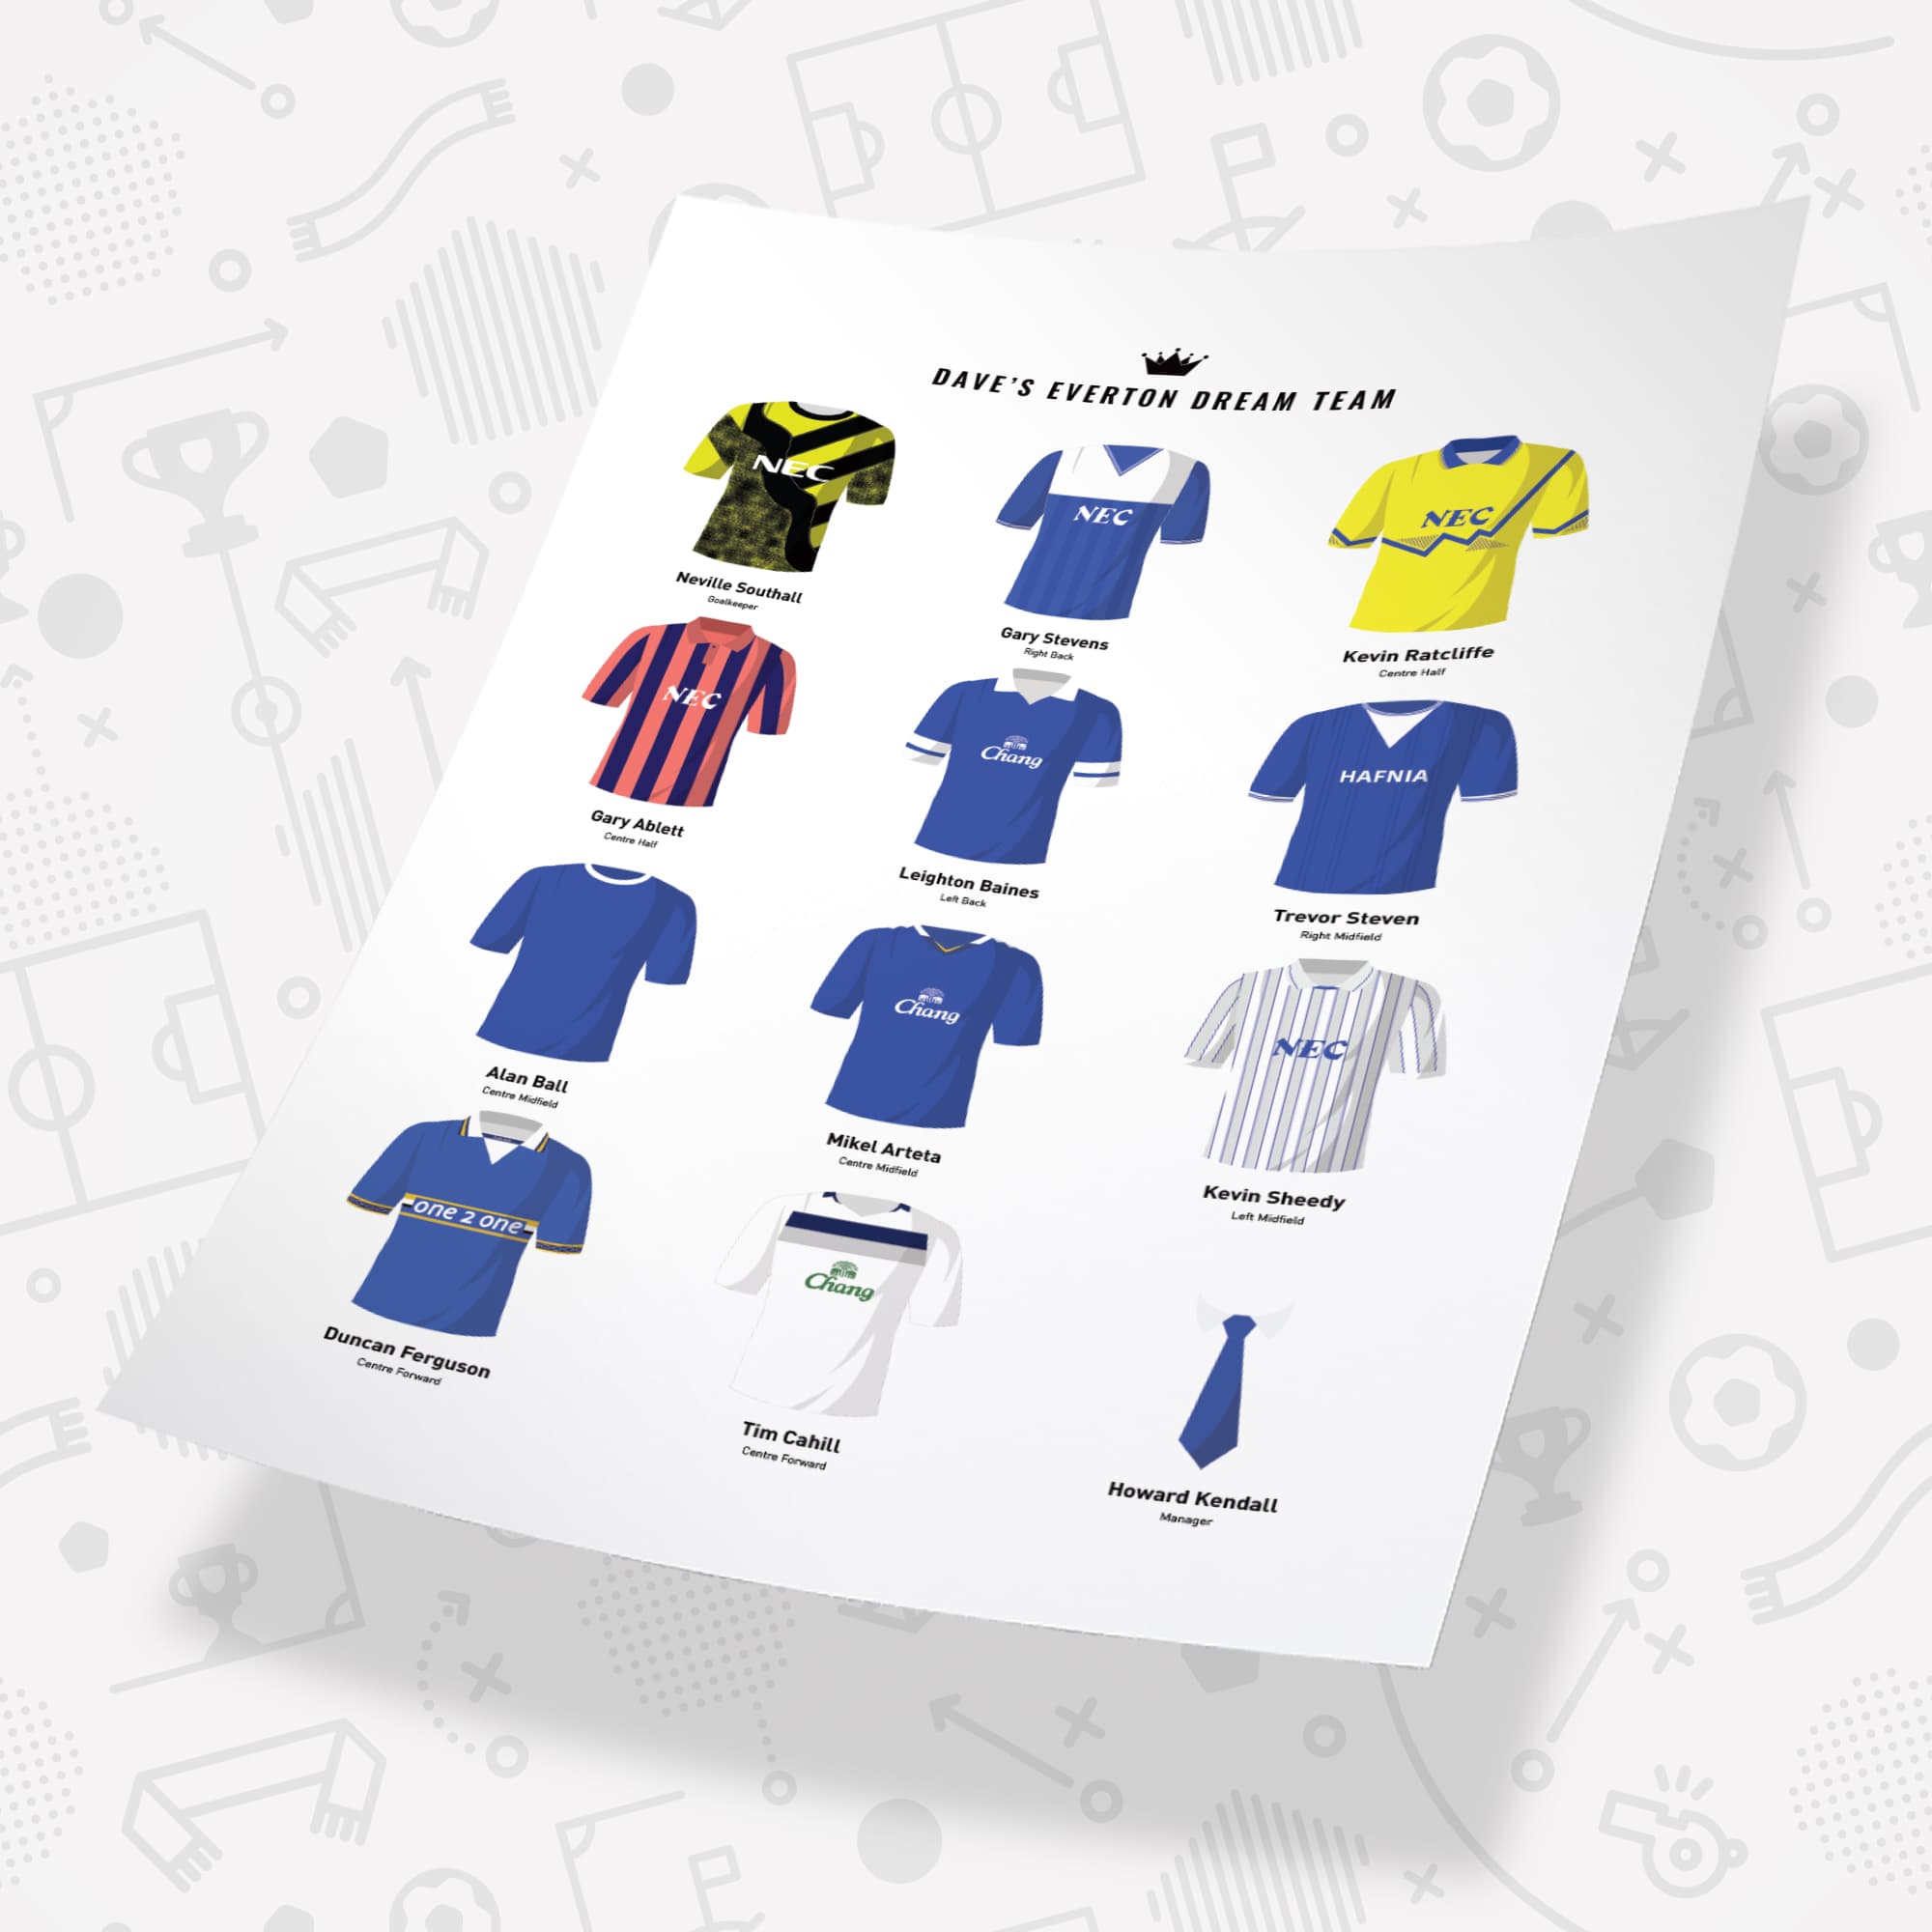 PERSONALISED Everton Dream Team Football Print Good Team On Paper